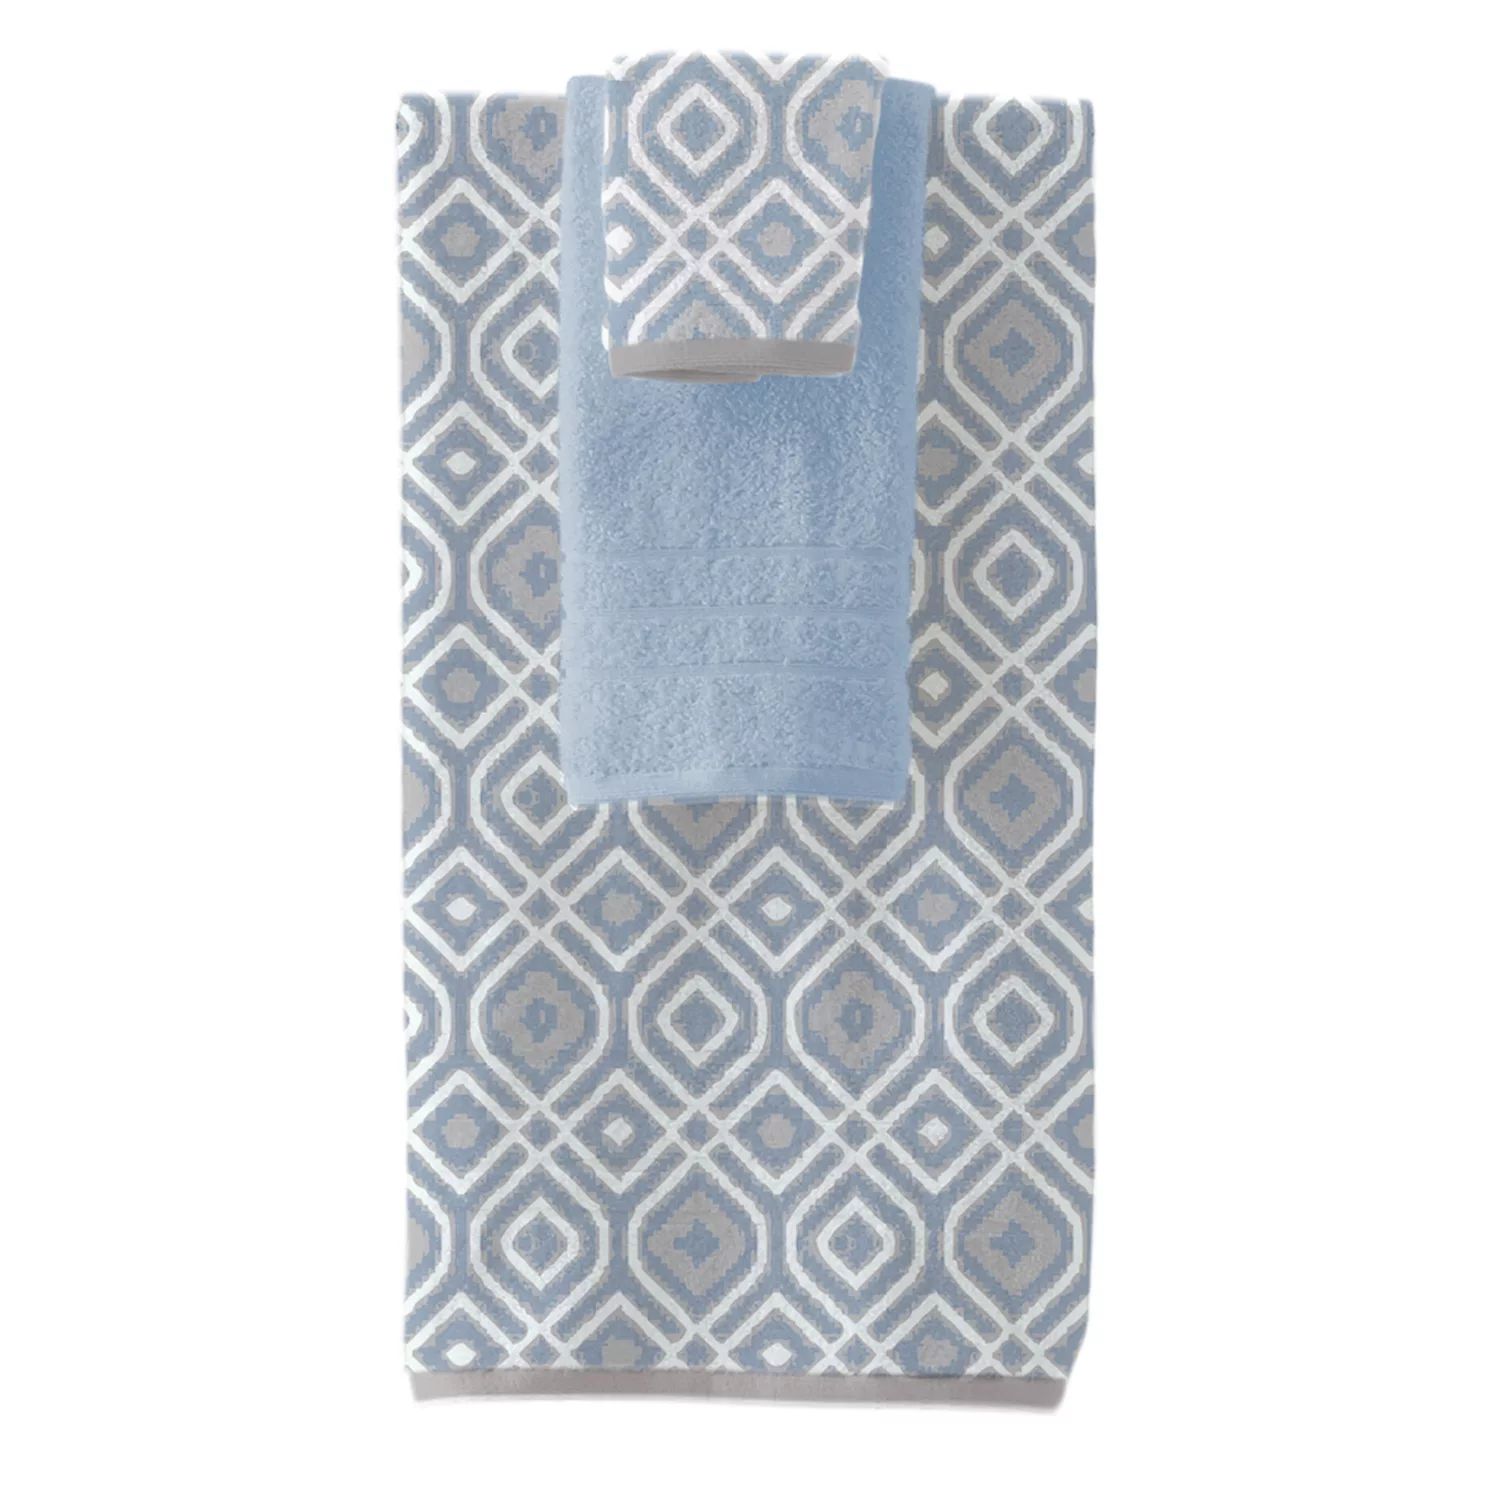 цена Pacific Coast Textiles Oxford Набор банных полотенец из 6 предметов, окрашенных в пряжу, синий